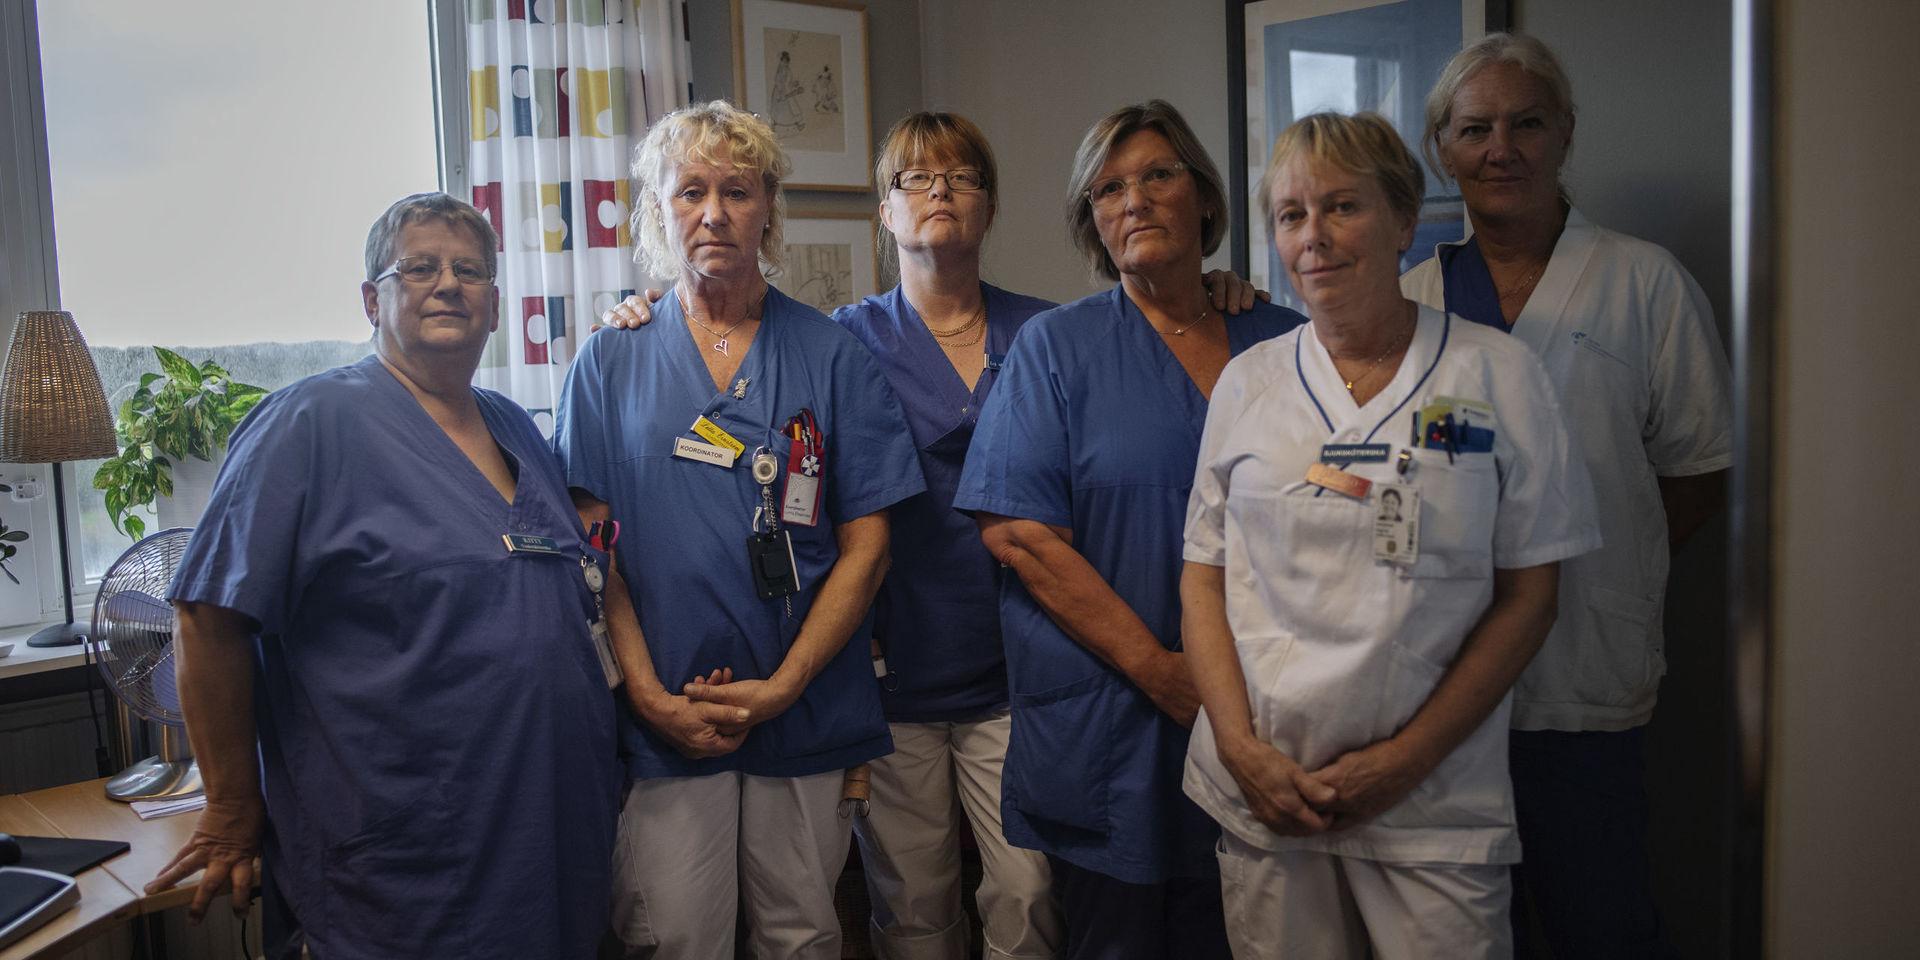 Från vänster: Kitty Lundqvist, undersköterska, Lotta Ernström, sjuksköterska, Lotta Blomgren, sjuksköterska, Karin Larsson, undersköterska, Kate Olsson, undersköterska, Ingrid Theren, sjuksköterska. 